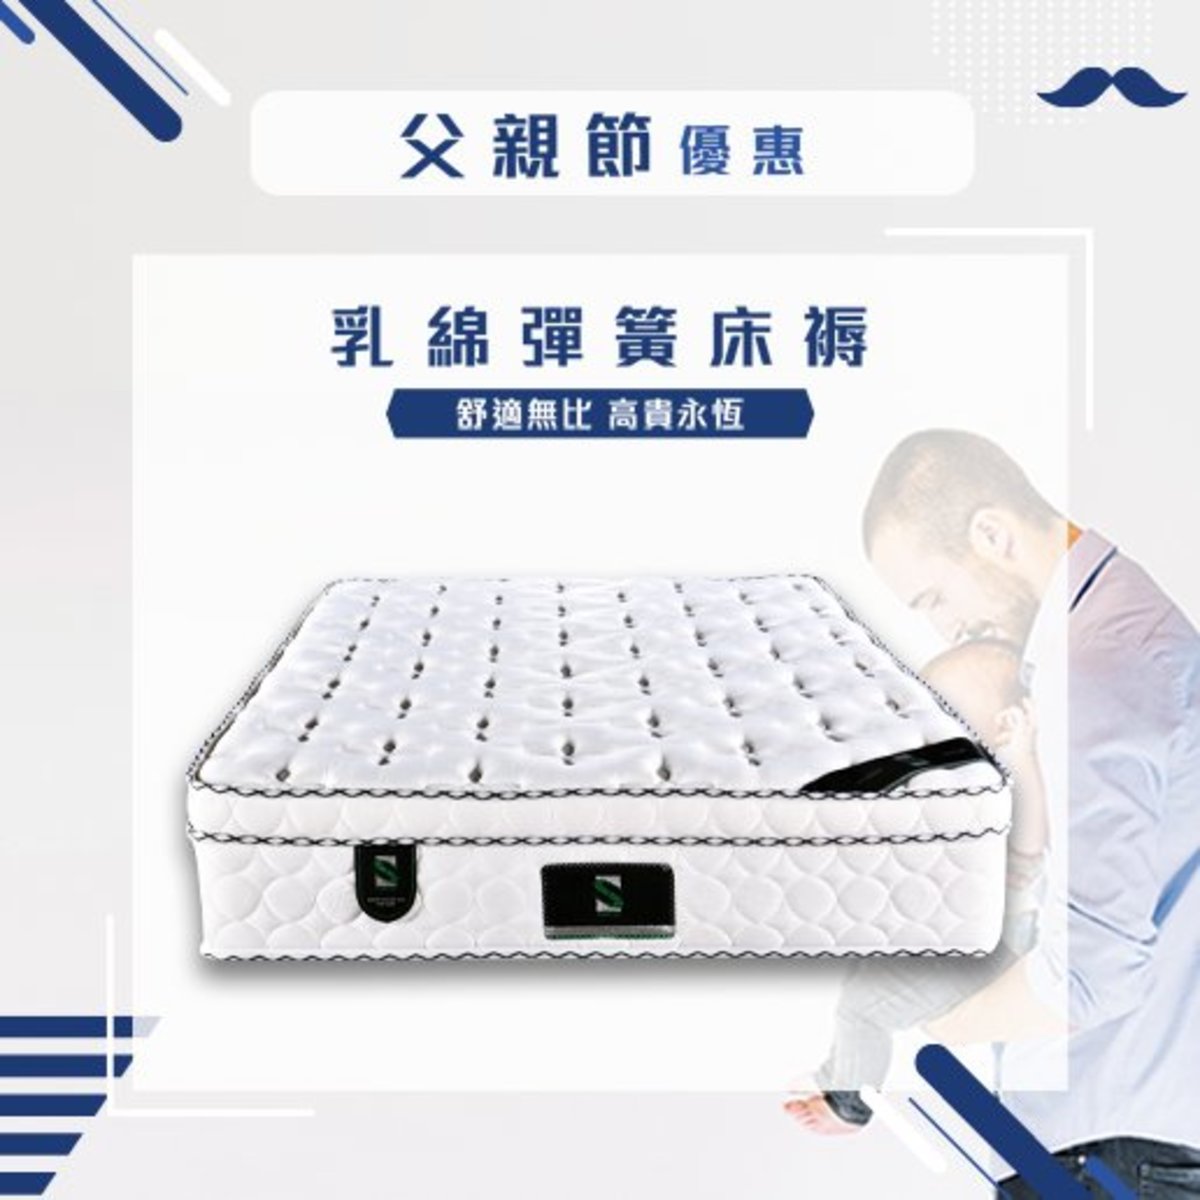 森美奧 乳綿彈簧床褥 48x72x10 尺碼 48x72 Hktvmall 香港最大網購平台